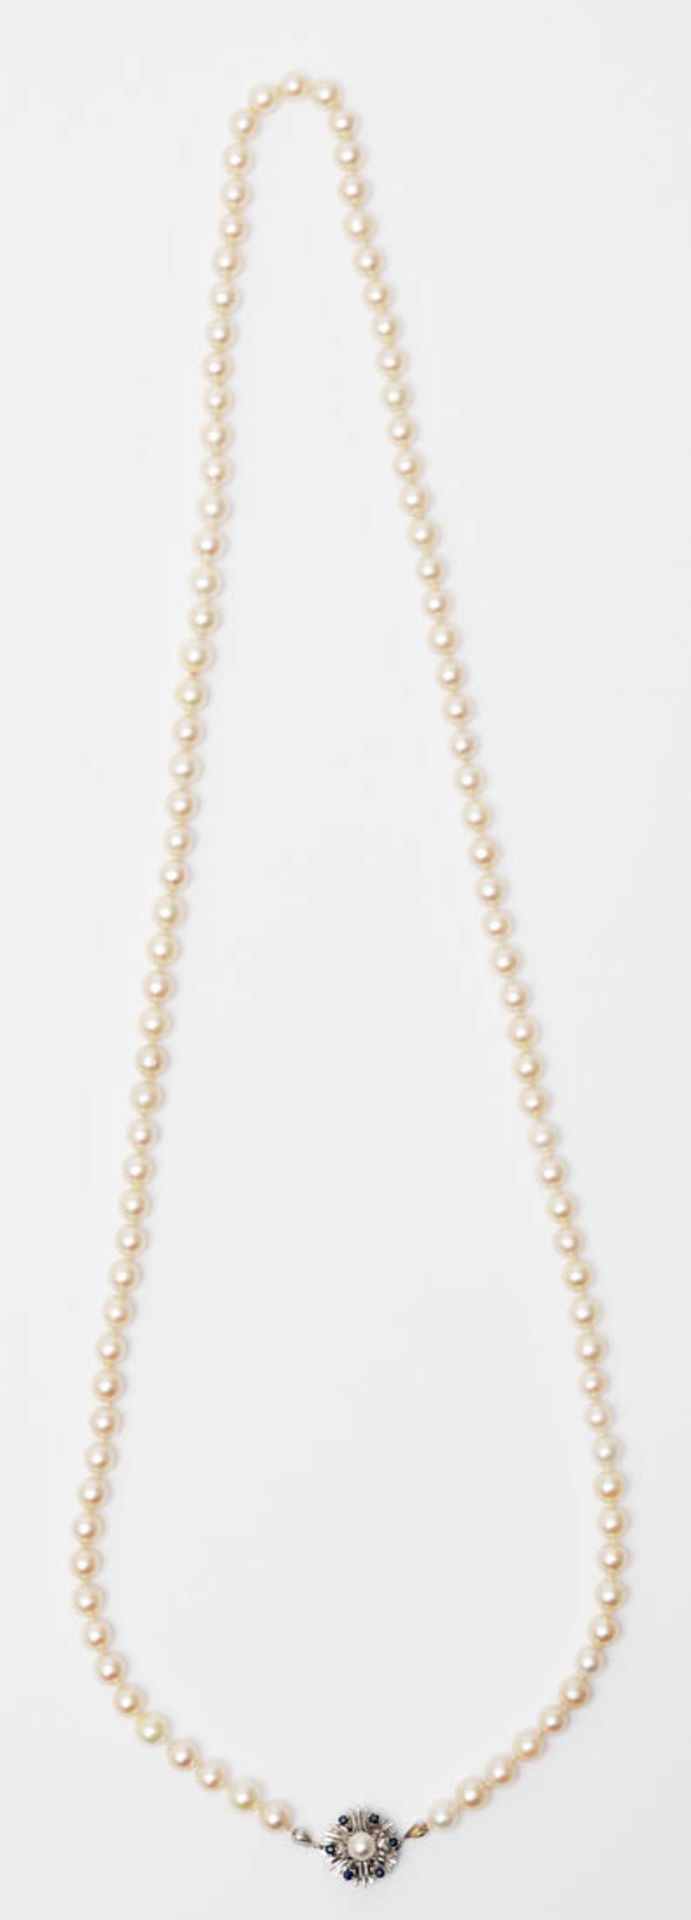 Zuchtperlkette Perlen von ca. 7mm Durchm. mit feinem Lüster. Schloss aus WG 14kt, besetzt mit